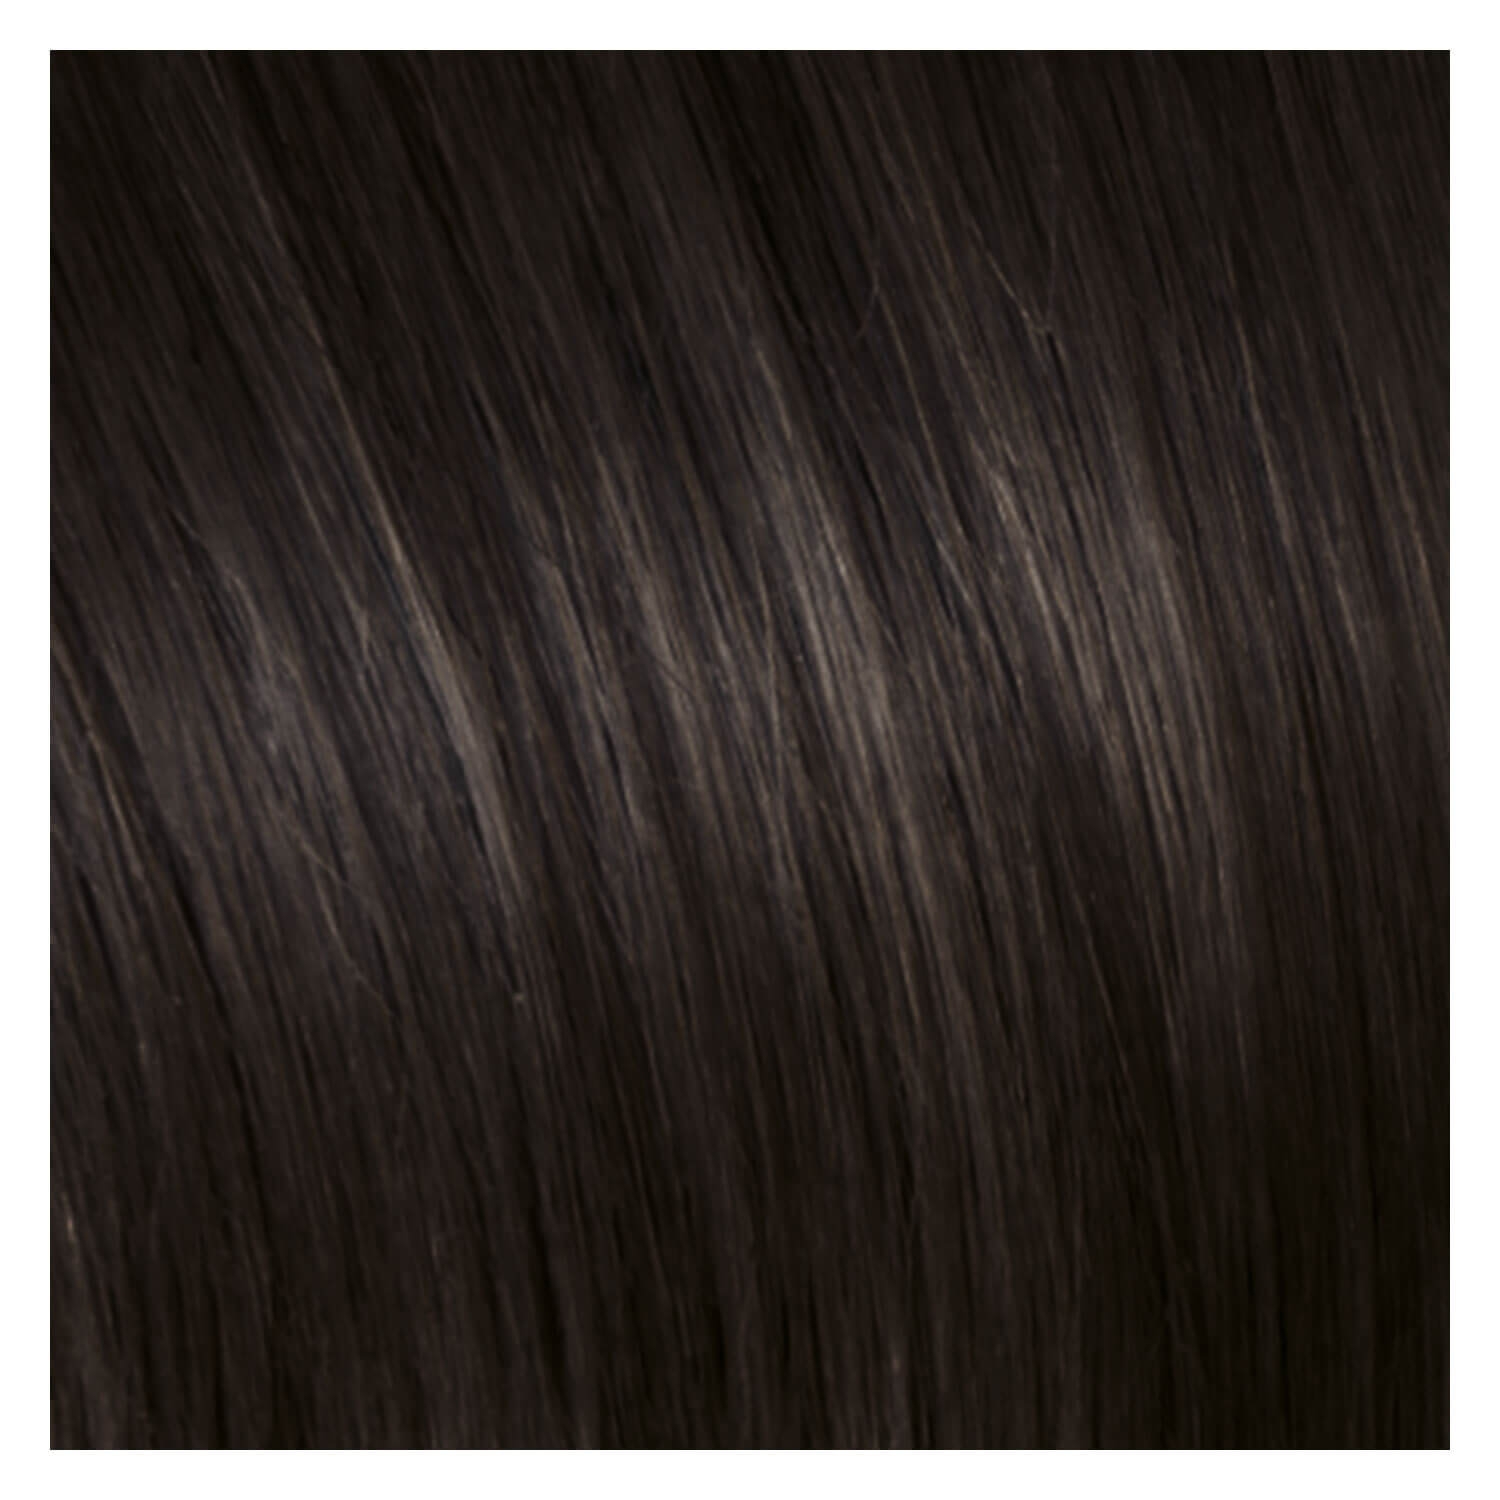 Produktbild von SHE Bonding-System Hair Extensions Wavy - 4 Kastanienbraun 55/60cm